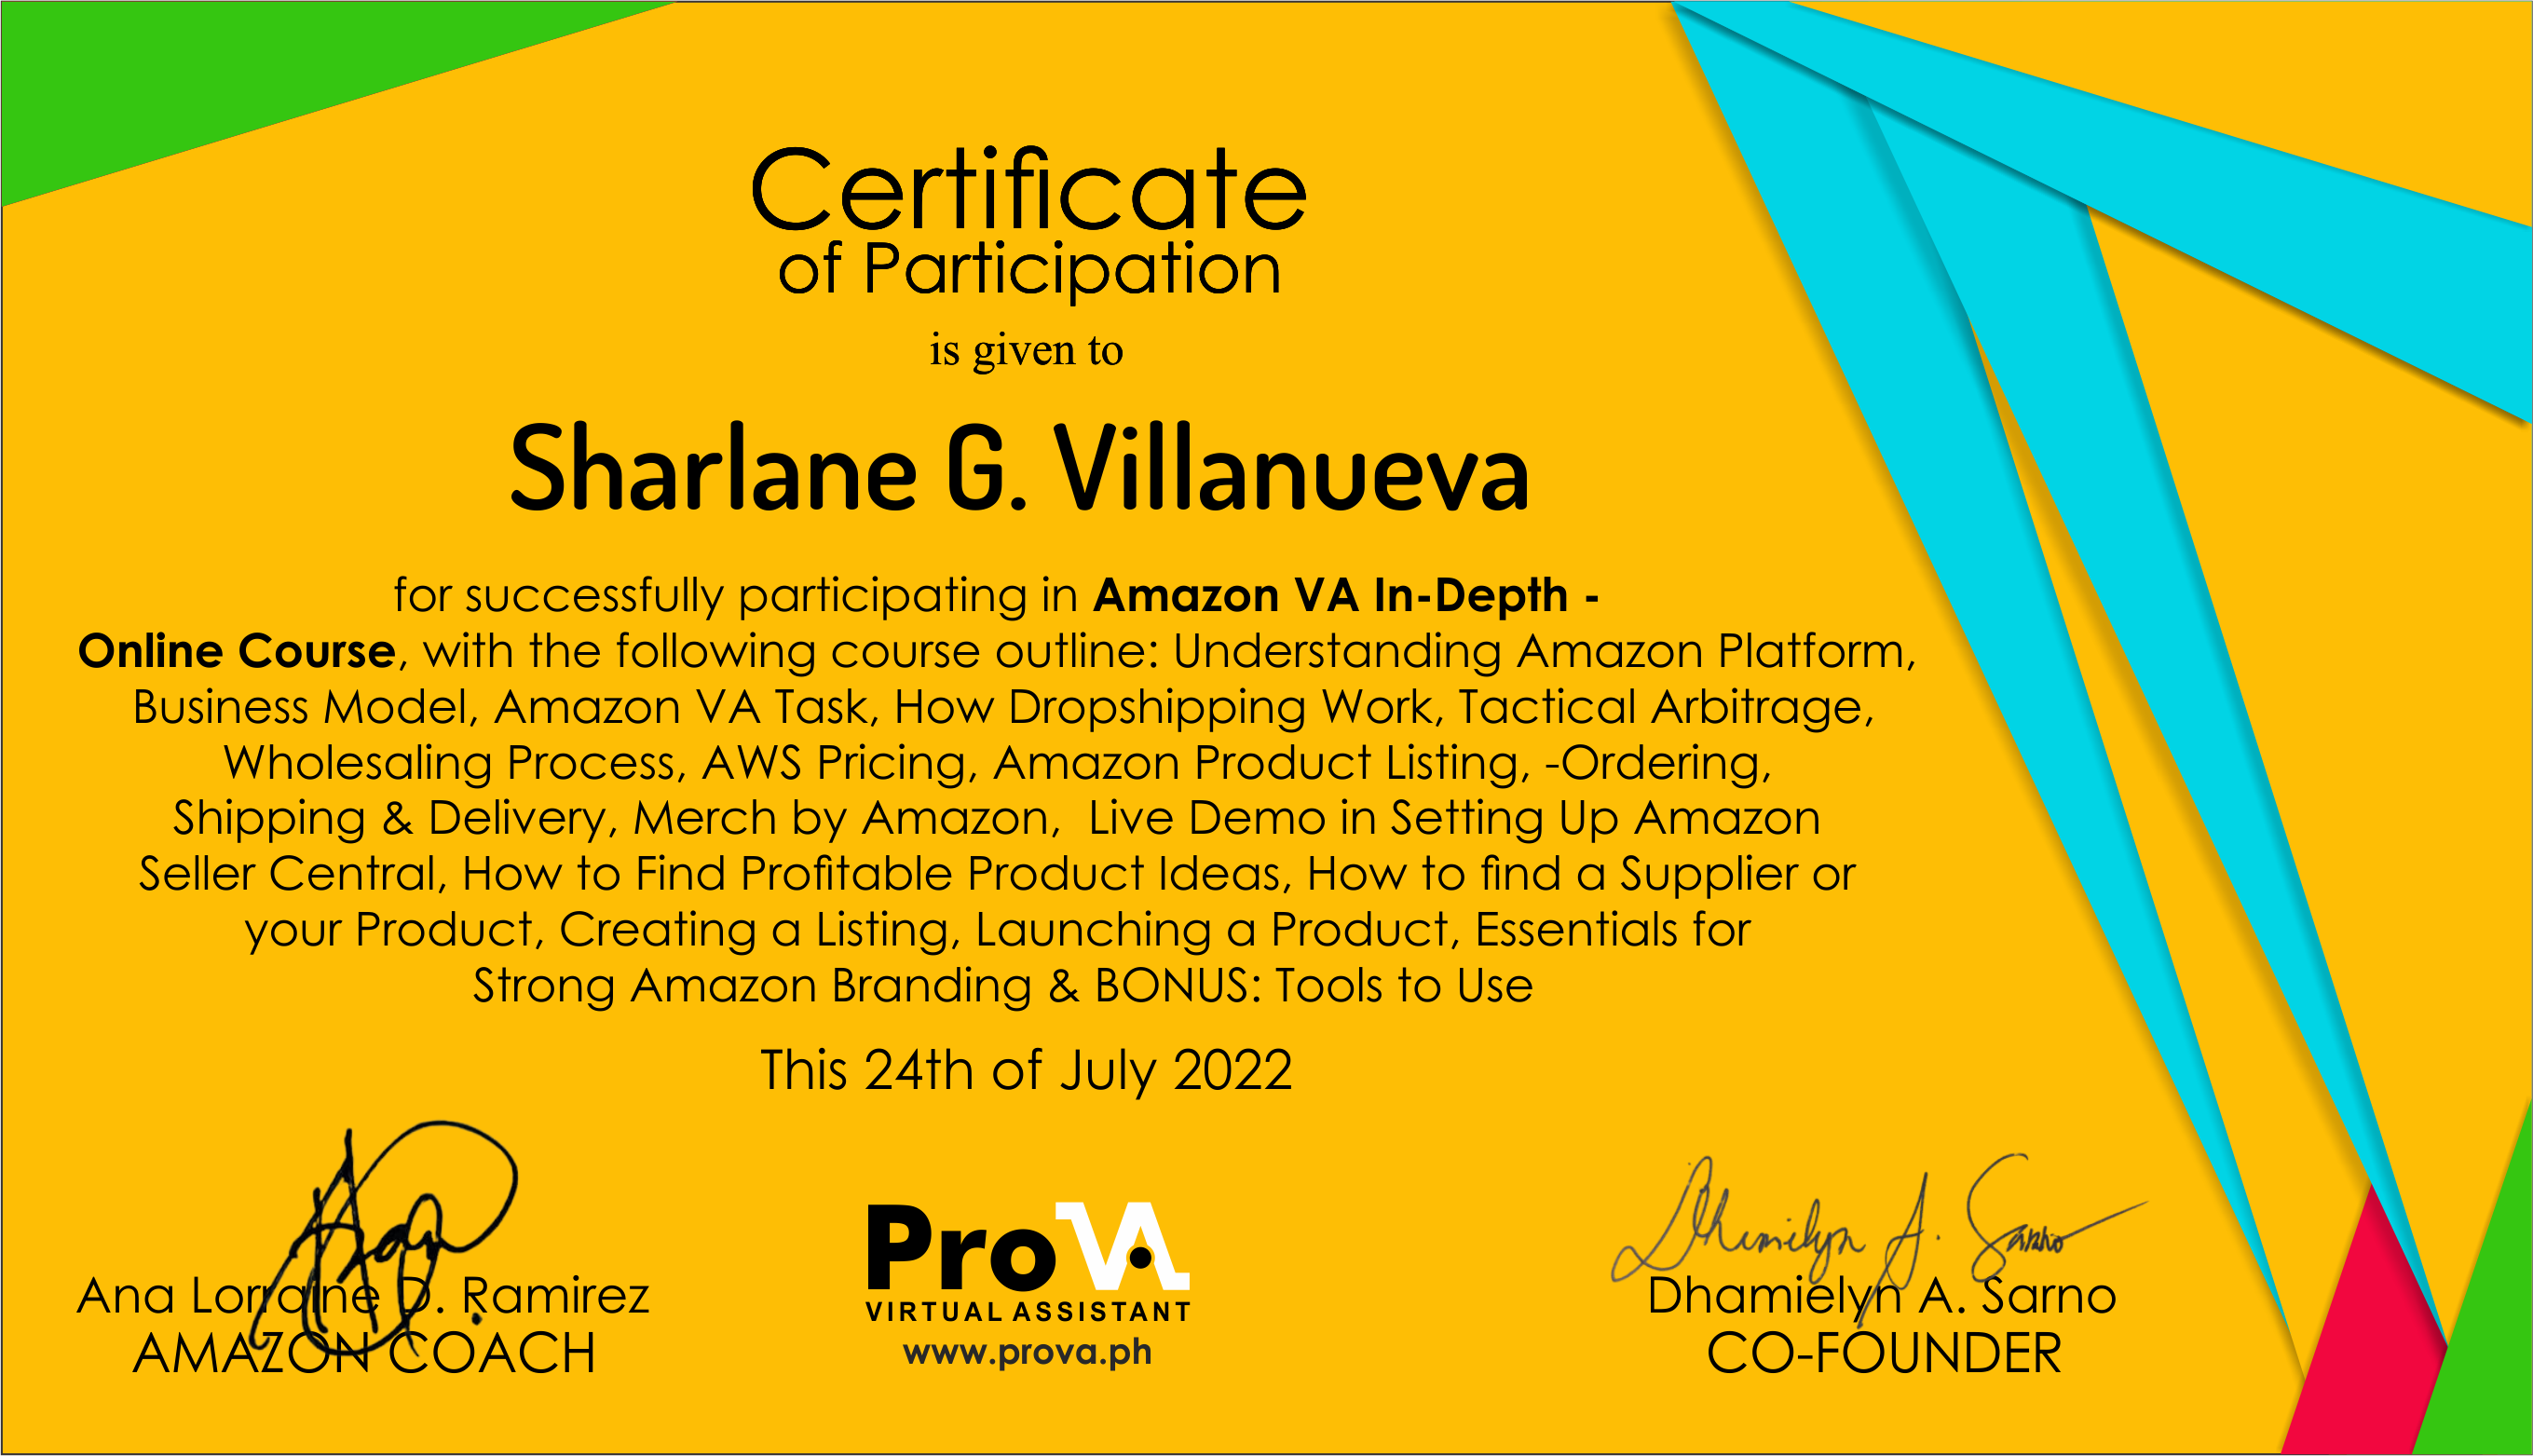 Amazon VA In-Depth Online Course Certificate